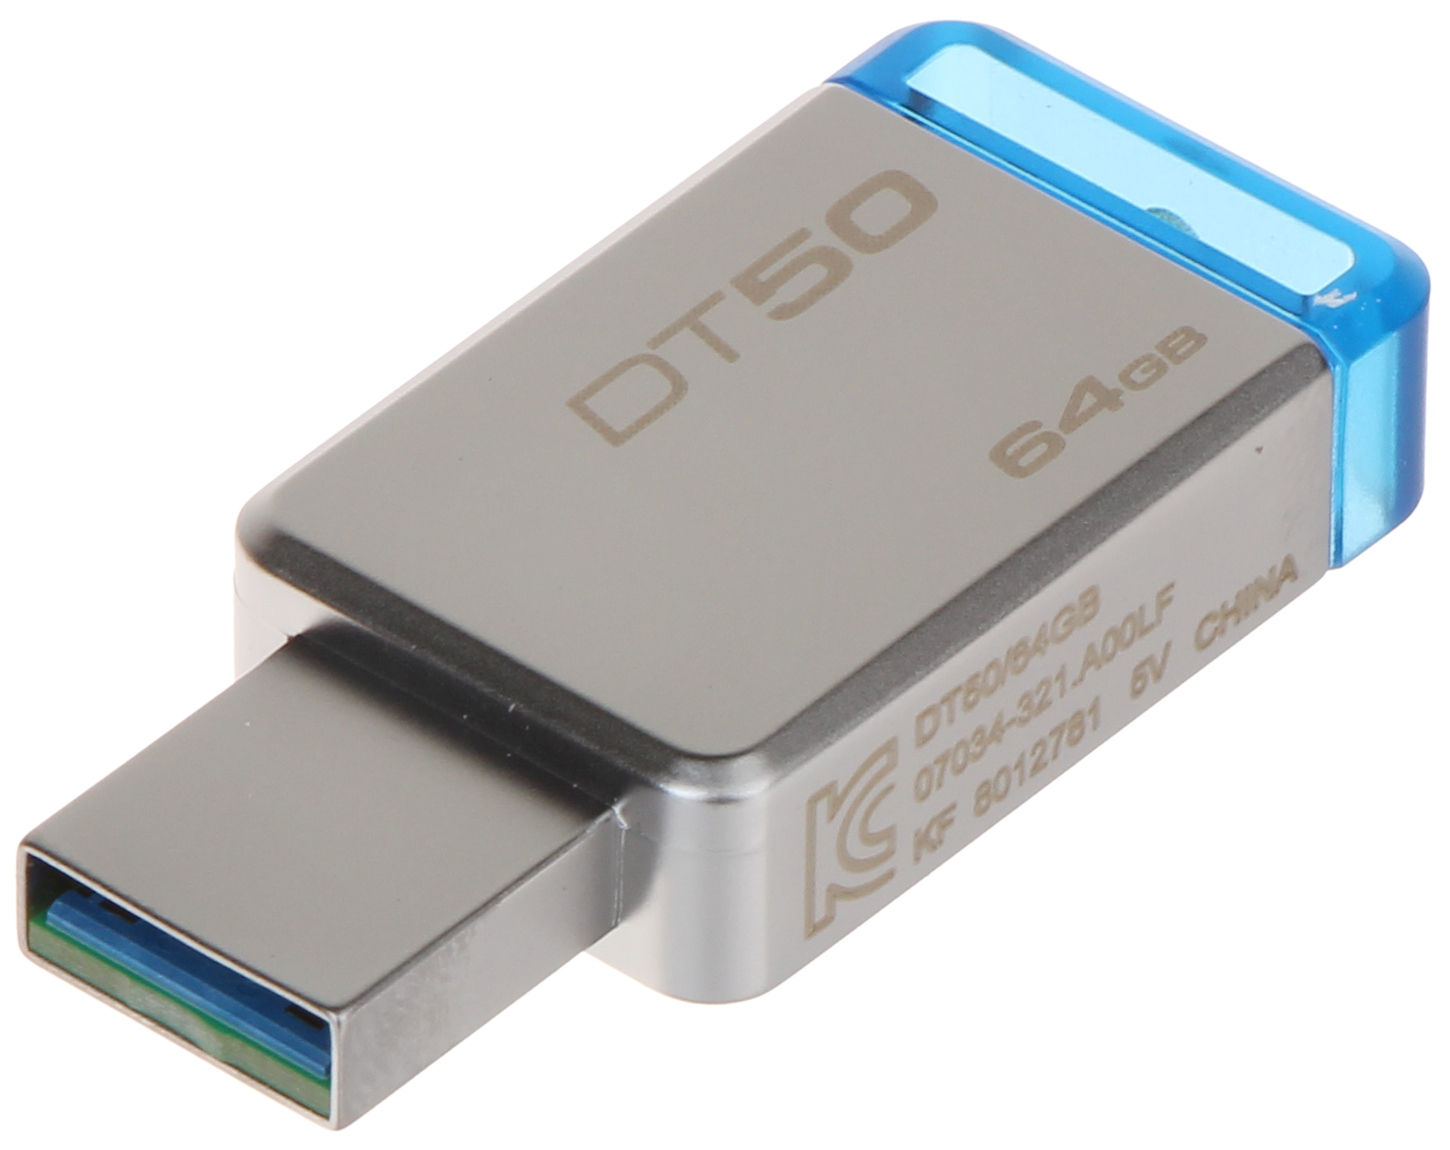 FLASH DRIVE FD-64/DT50-KING 64 GB USB 3.1/3.0 KINGSTON - Flash Drives -  Delta